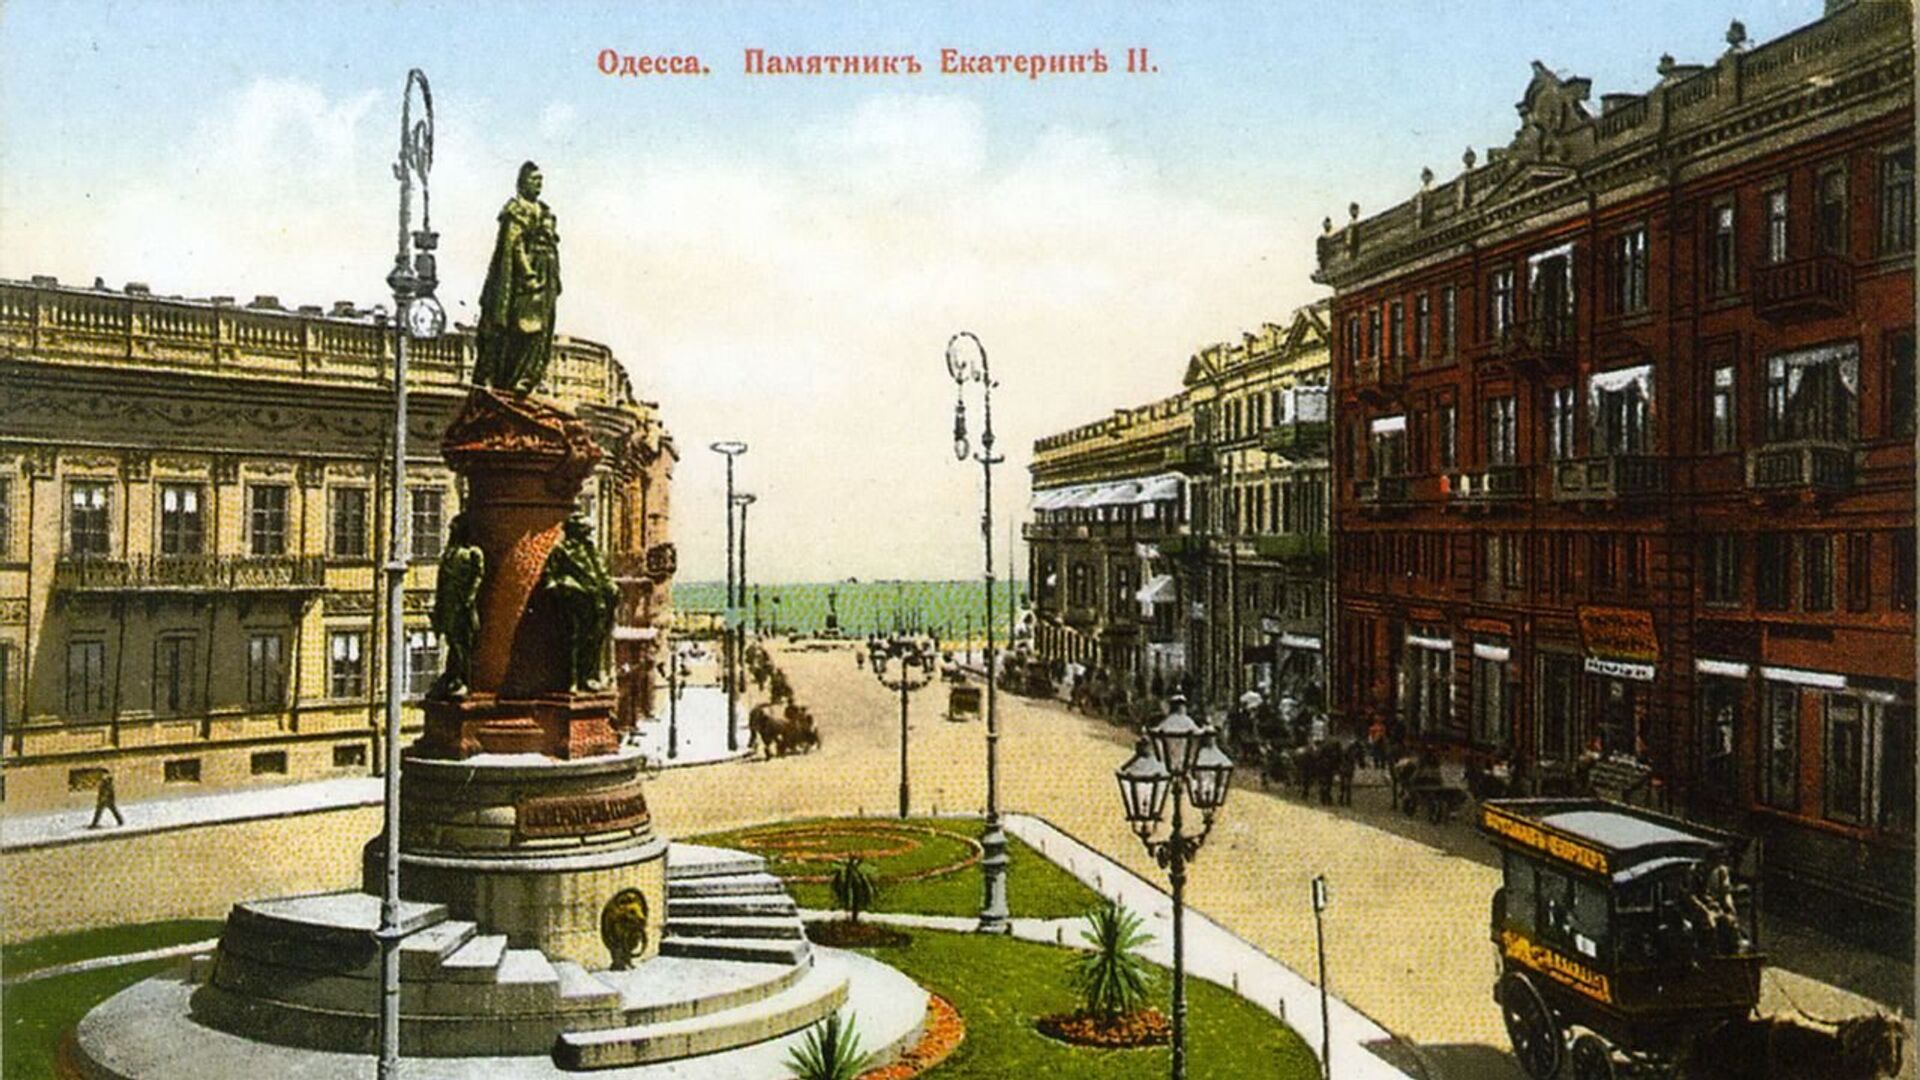  Памятник основателям Одессы  - РИА Новости, 1920, 19.05.2020